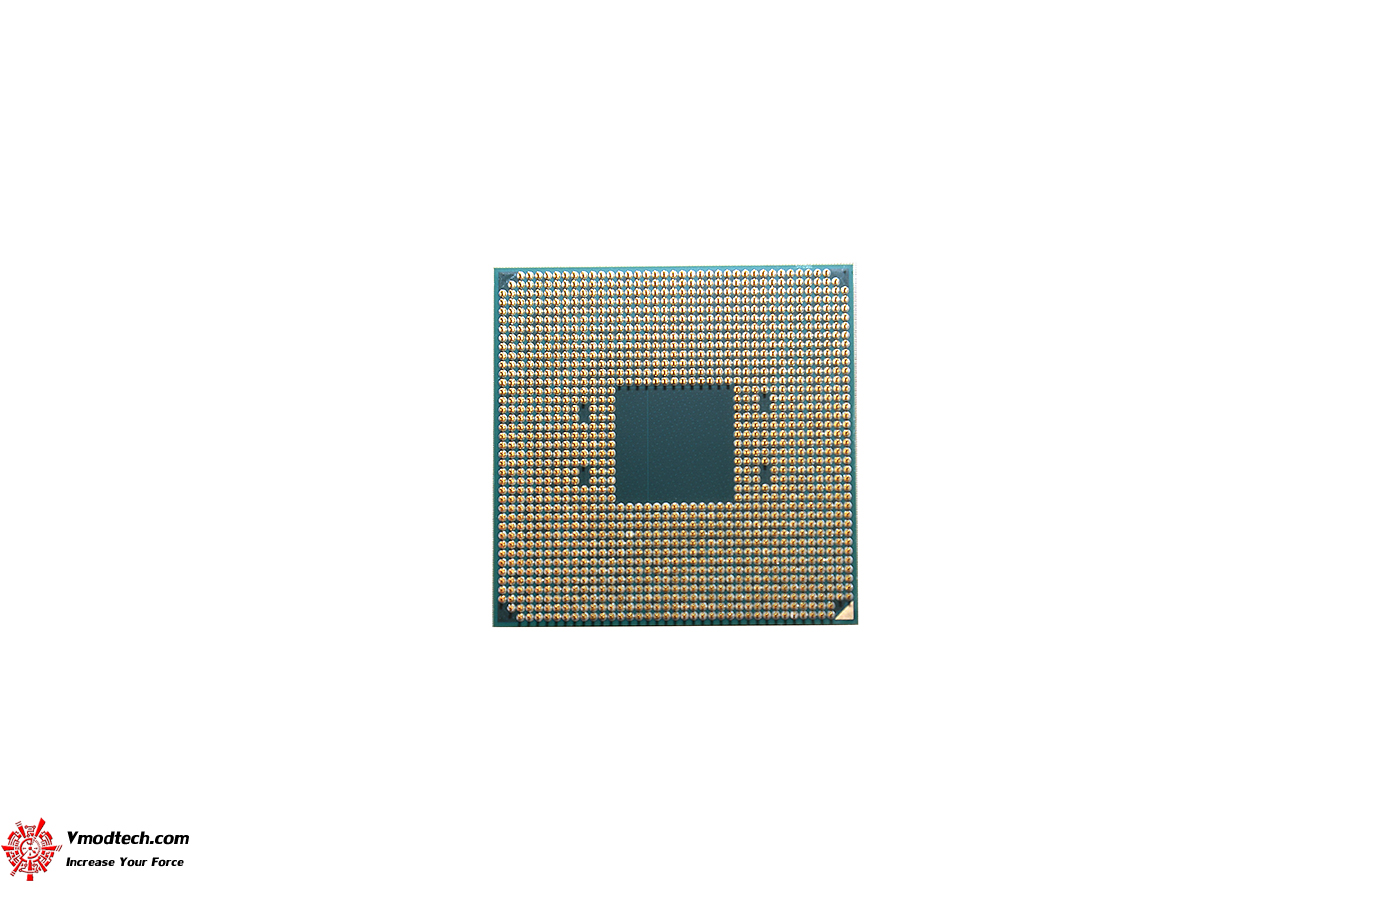 dsc 8961 AMD RYZEN 5 3600 PROCESSOR REVIEW 